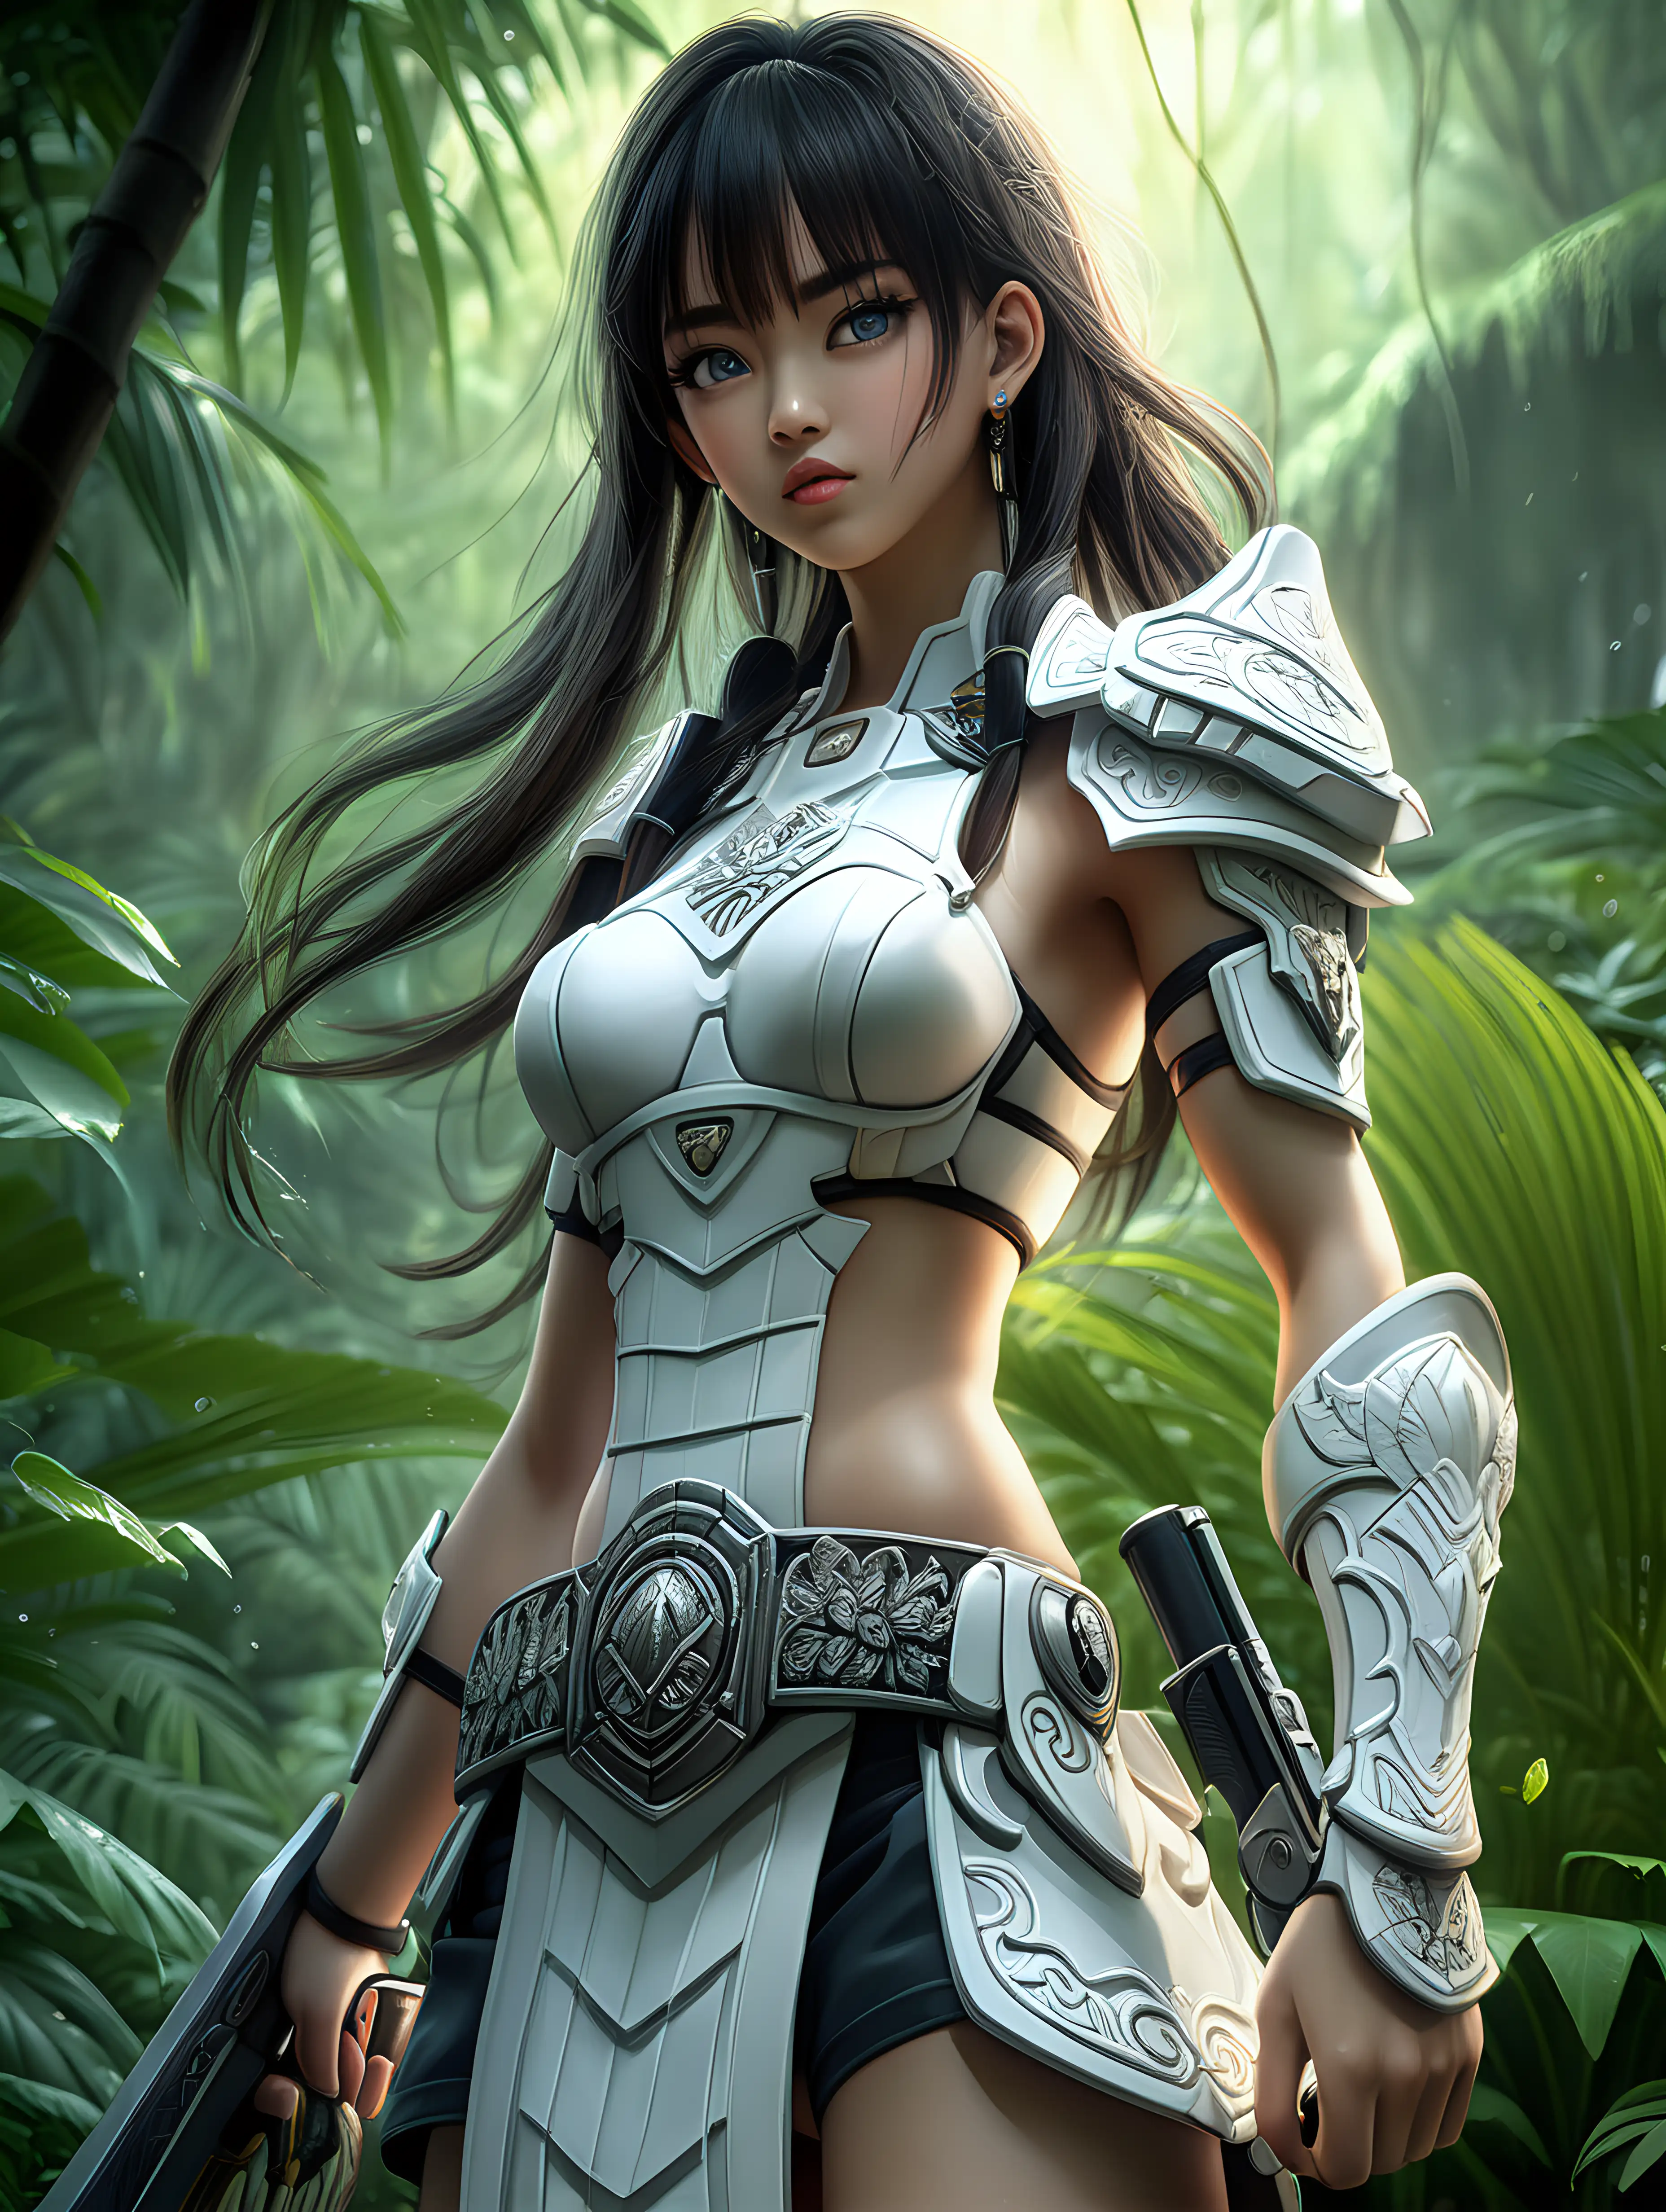 Mystical Anime Warrior in Elegant White Attire Explores Vietnam Jungle